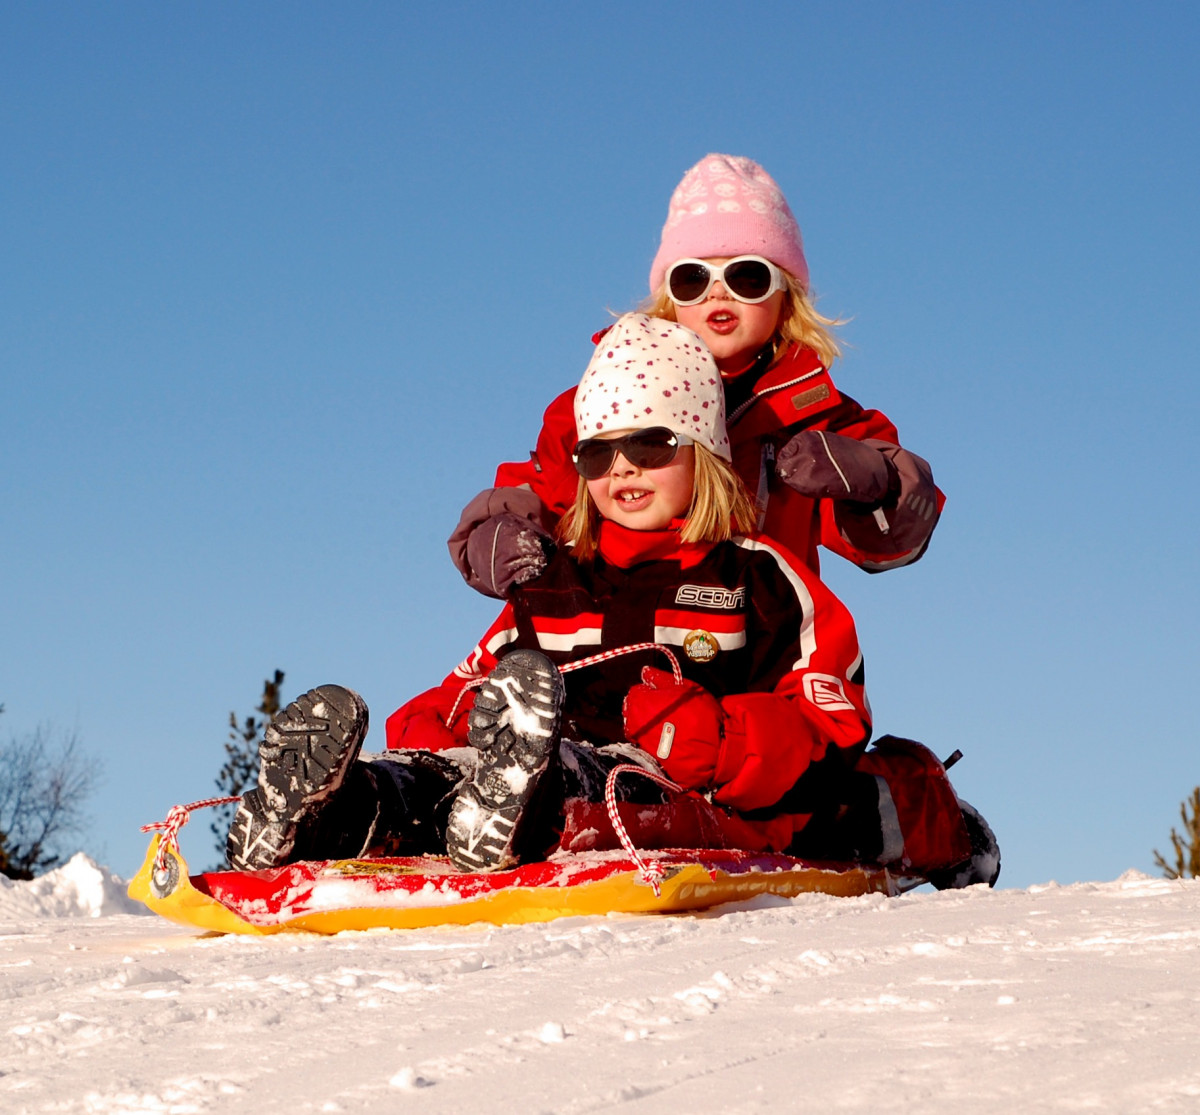 tuyết, mùa đông, Bầu trời, Xe, thể thao mạo hiểm, thiết bị thể thao, Leo núi, thể thao mùa đông, ở ngoài, Cô gái, Đám mây, bọn trẻ, vui vẻ, vui mừng, Người Thụy Điển, Ván trượt, Đi xe trượt tuyết, Thiết bị trượt tuyết